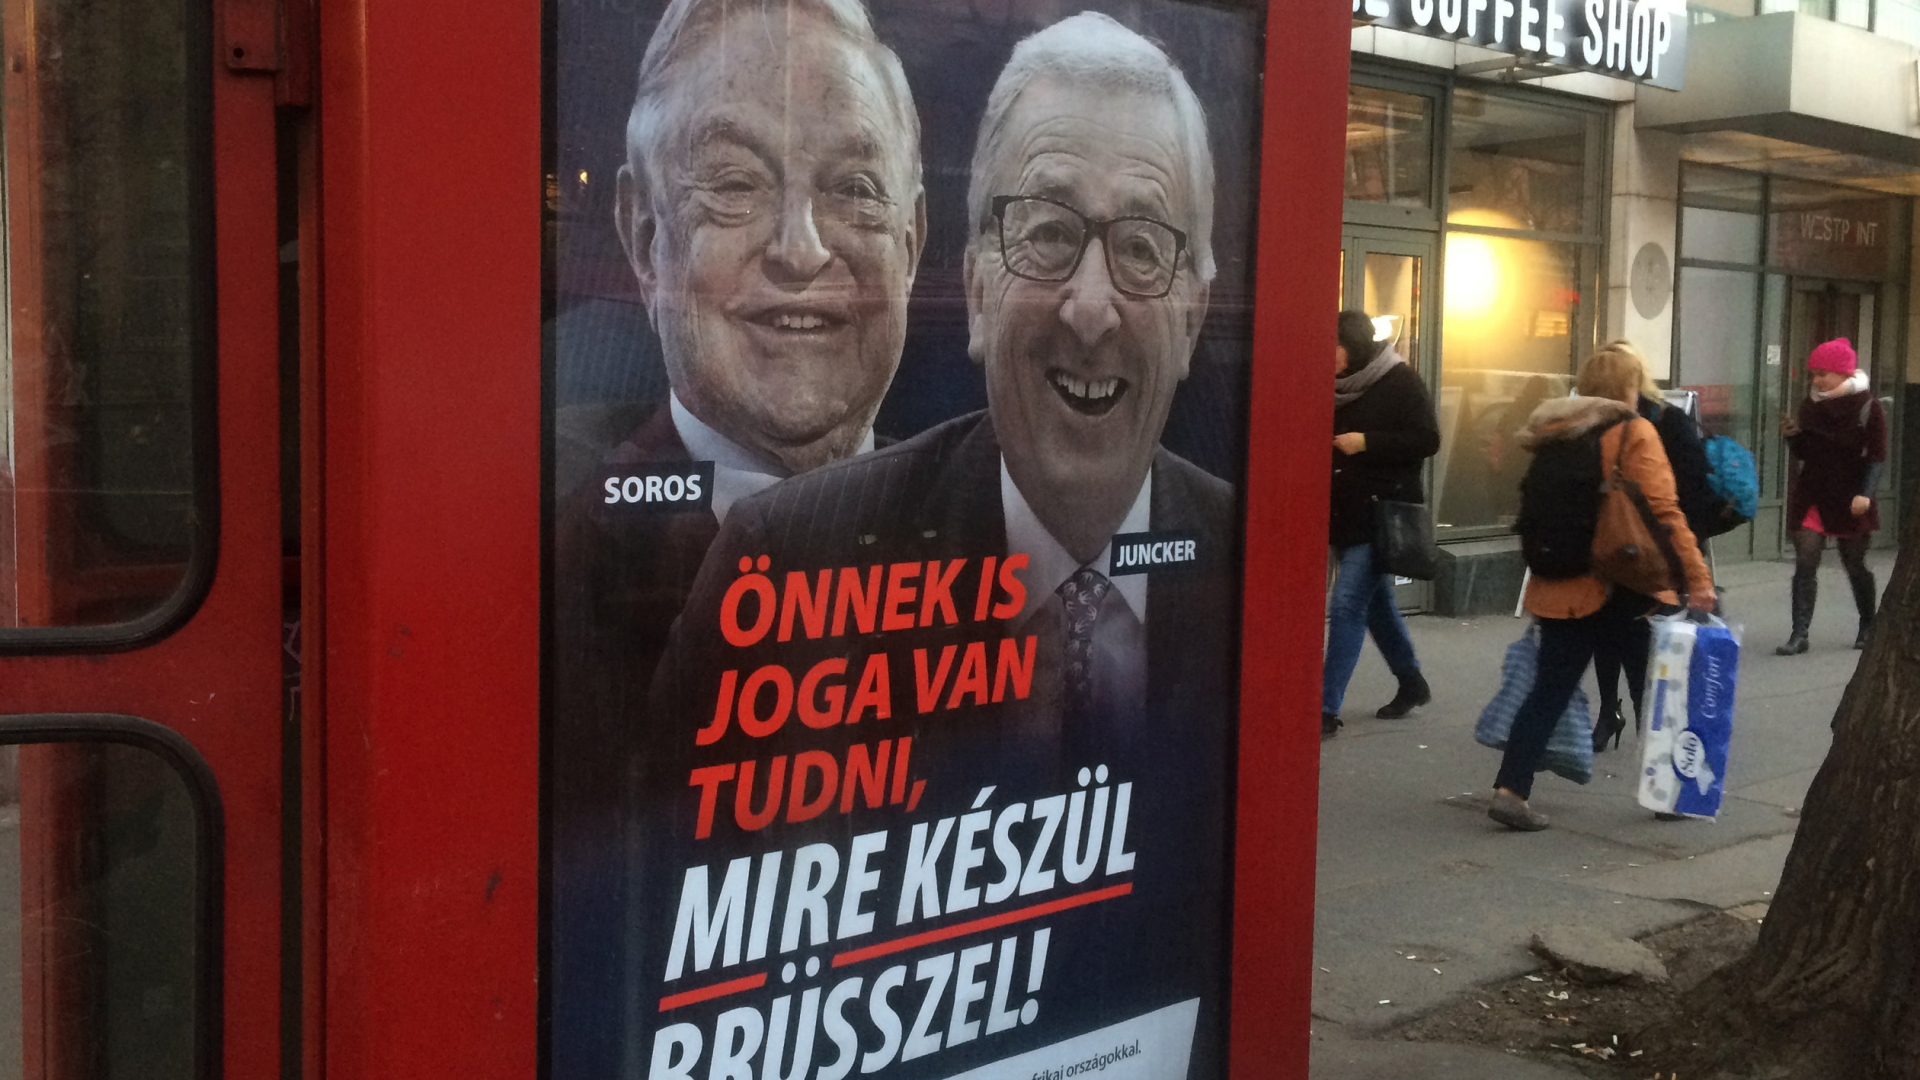 Plakat der ungarischen Kampagne gegen Soros und Juncker in Budapest